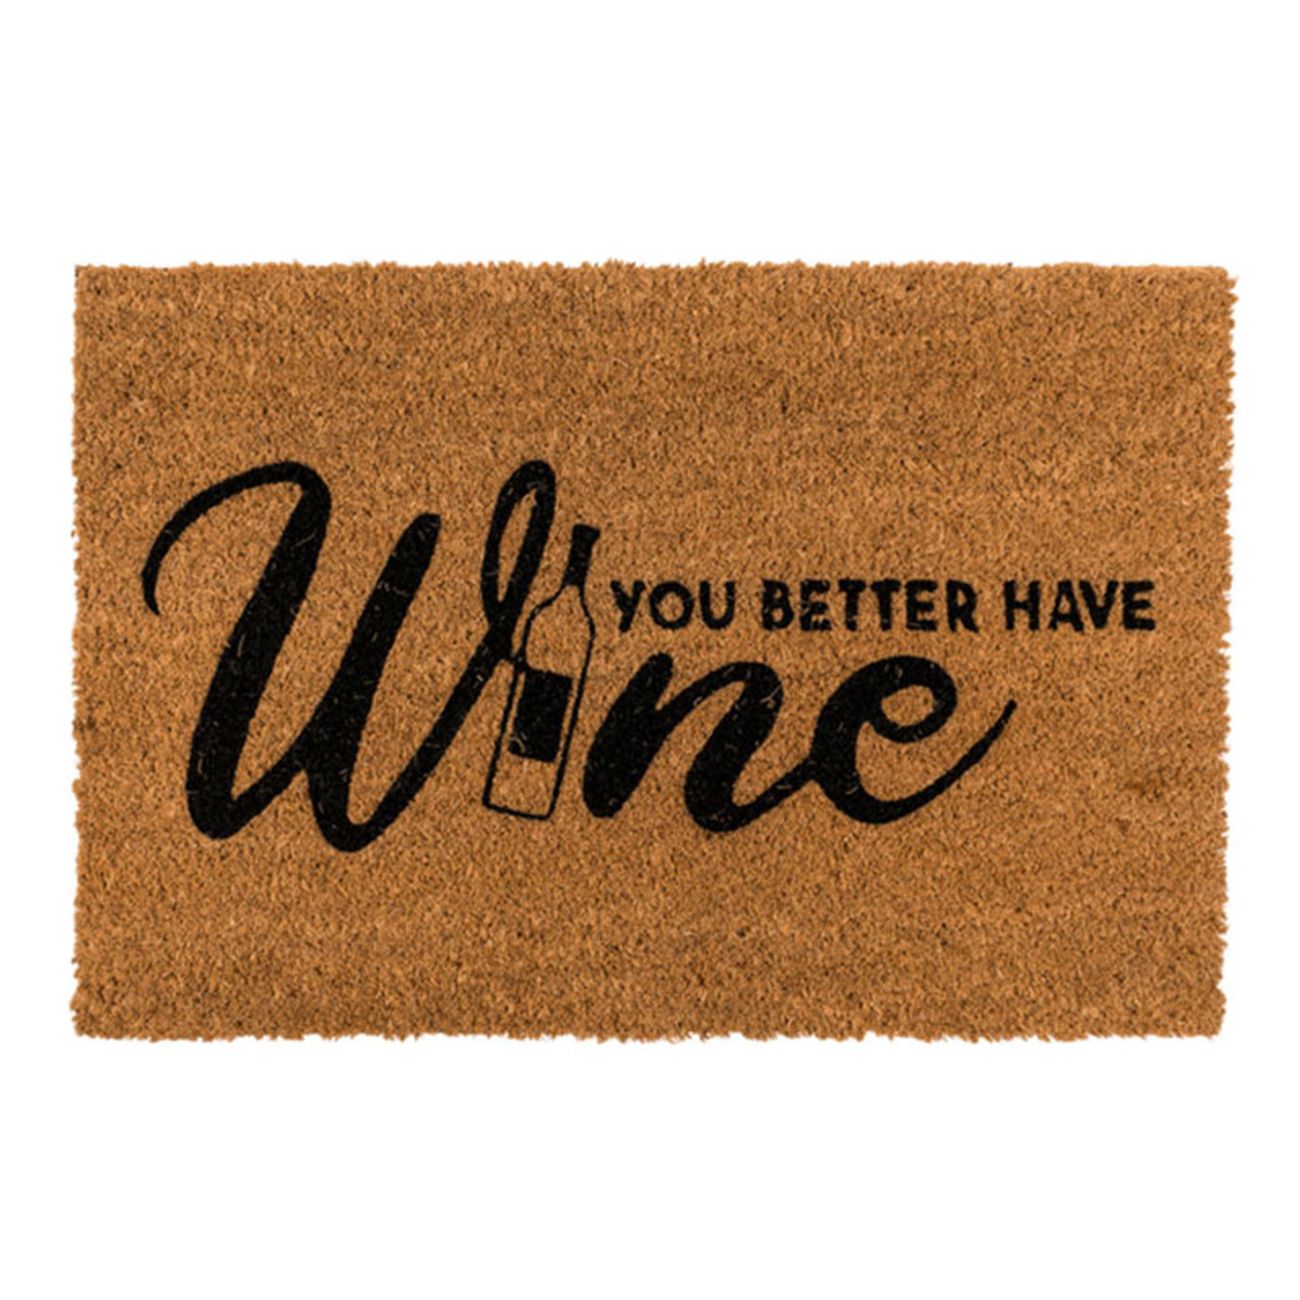 dorrmatta-you-better-have-wine-76254-1